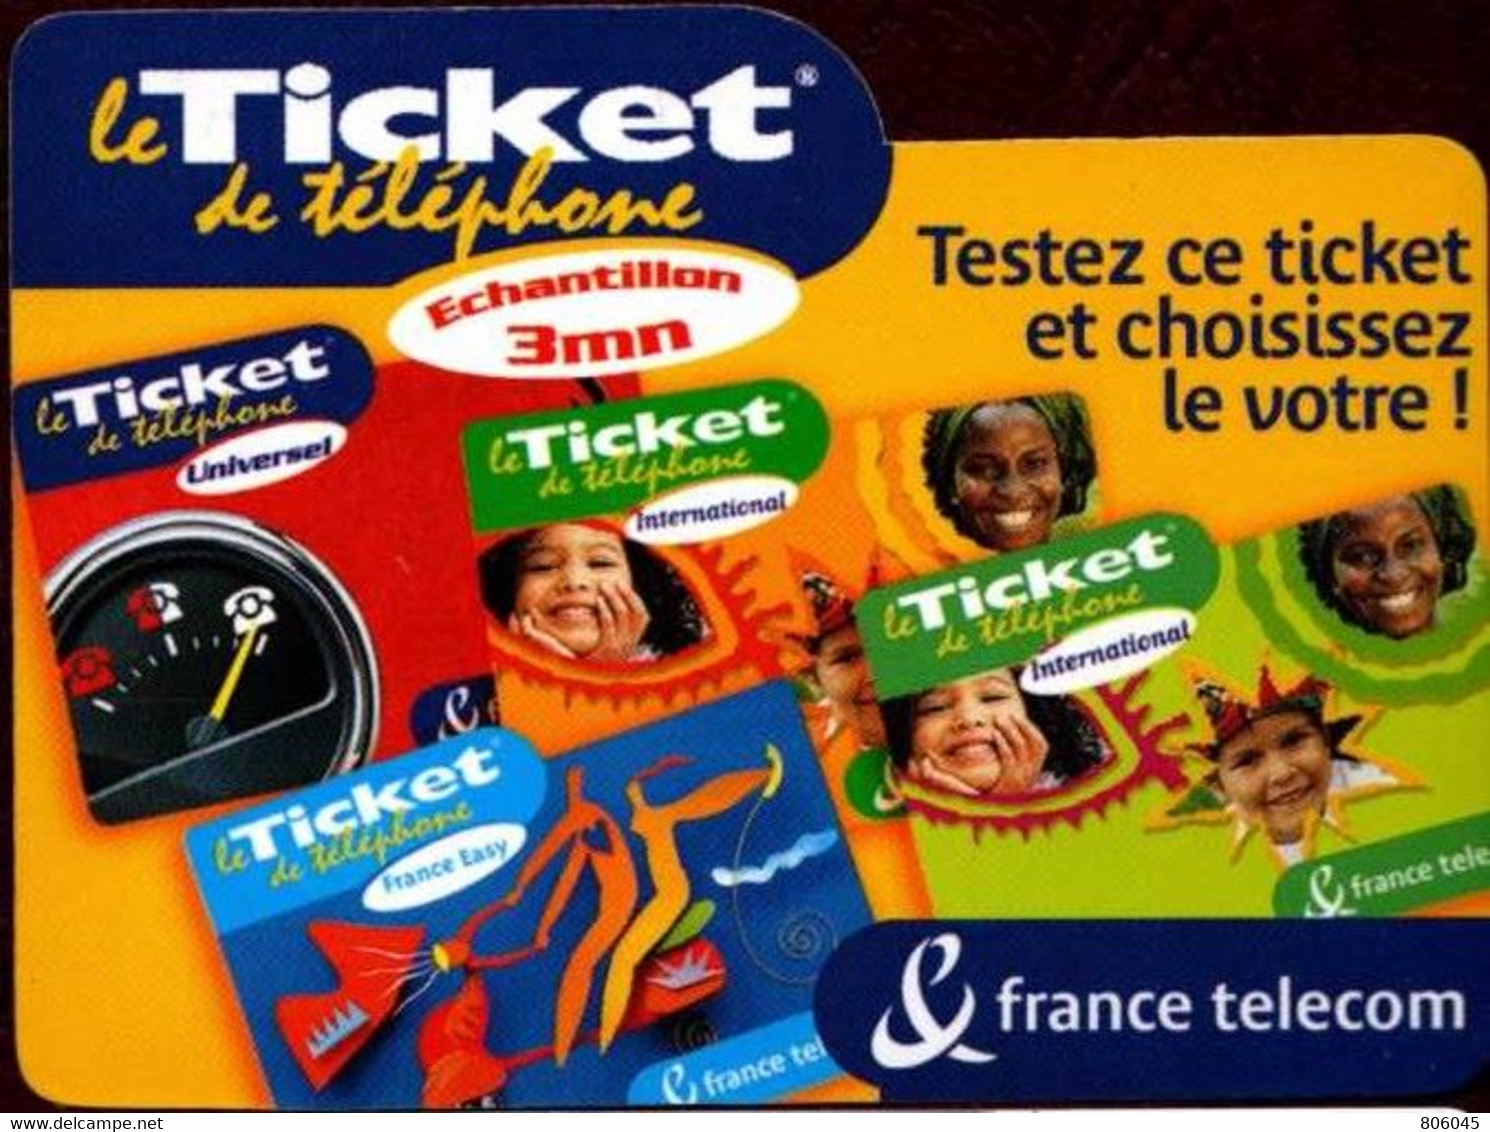 Ticket Télépone Orange - échantillon 3 Mn. - Billetes FT